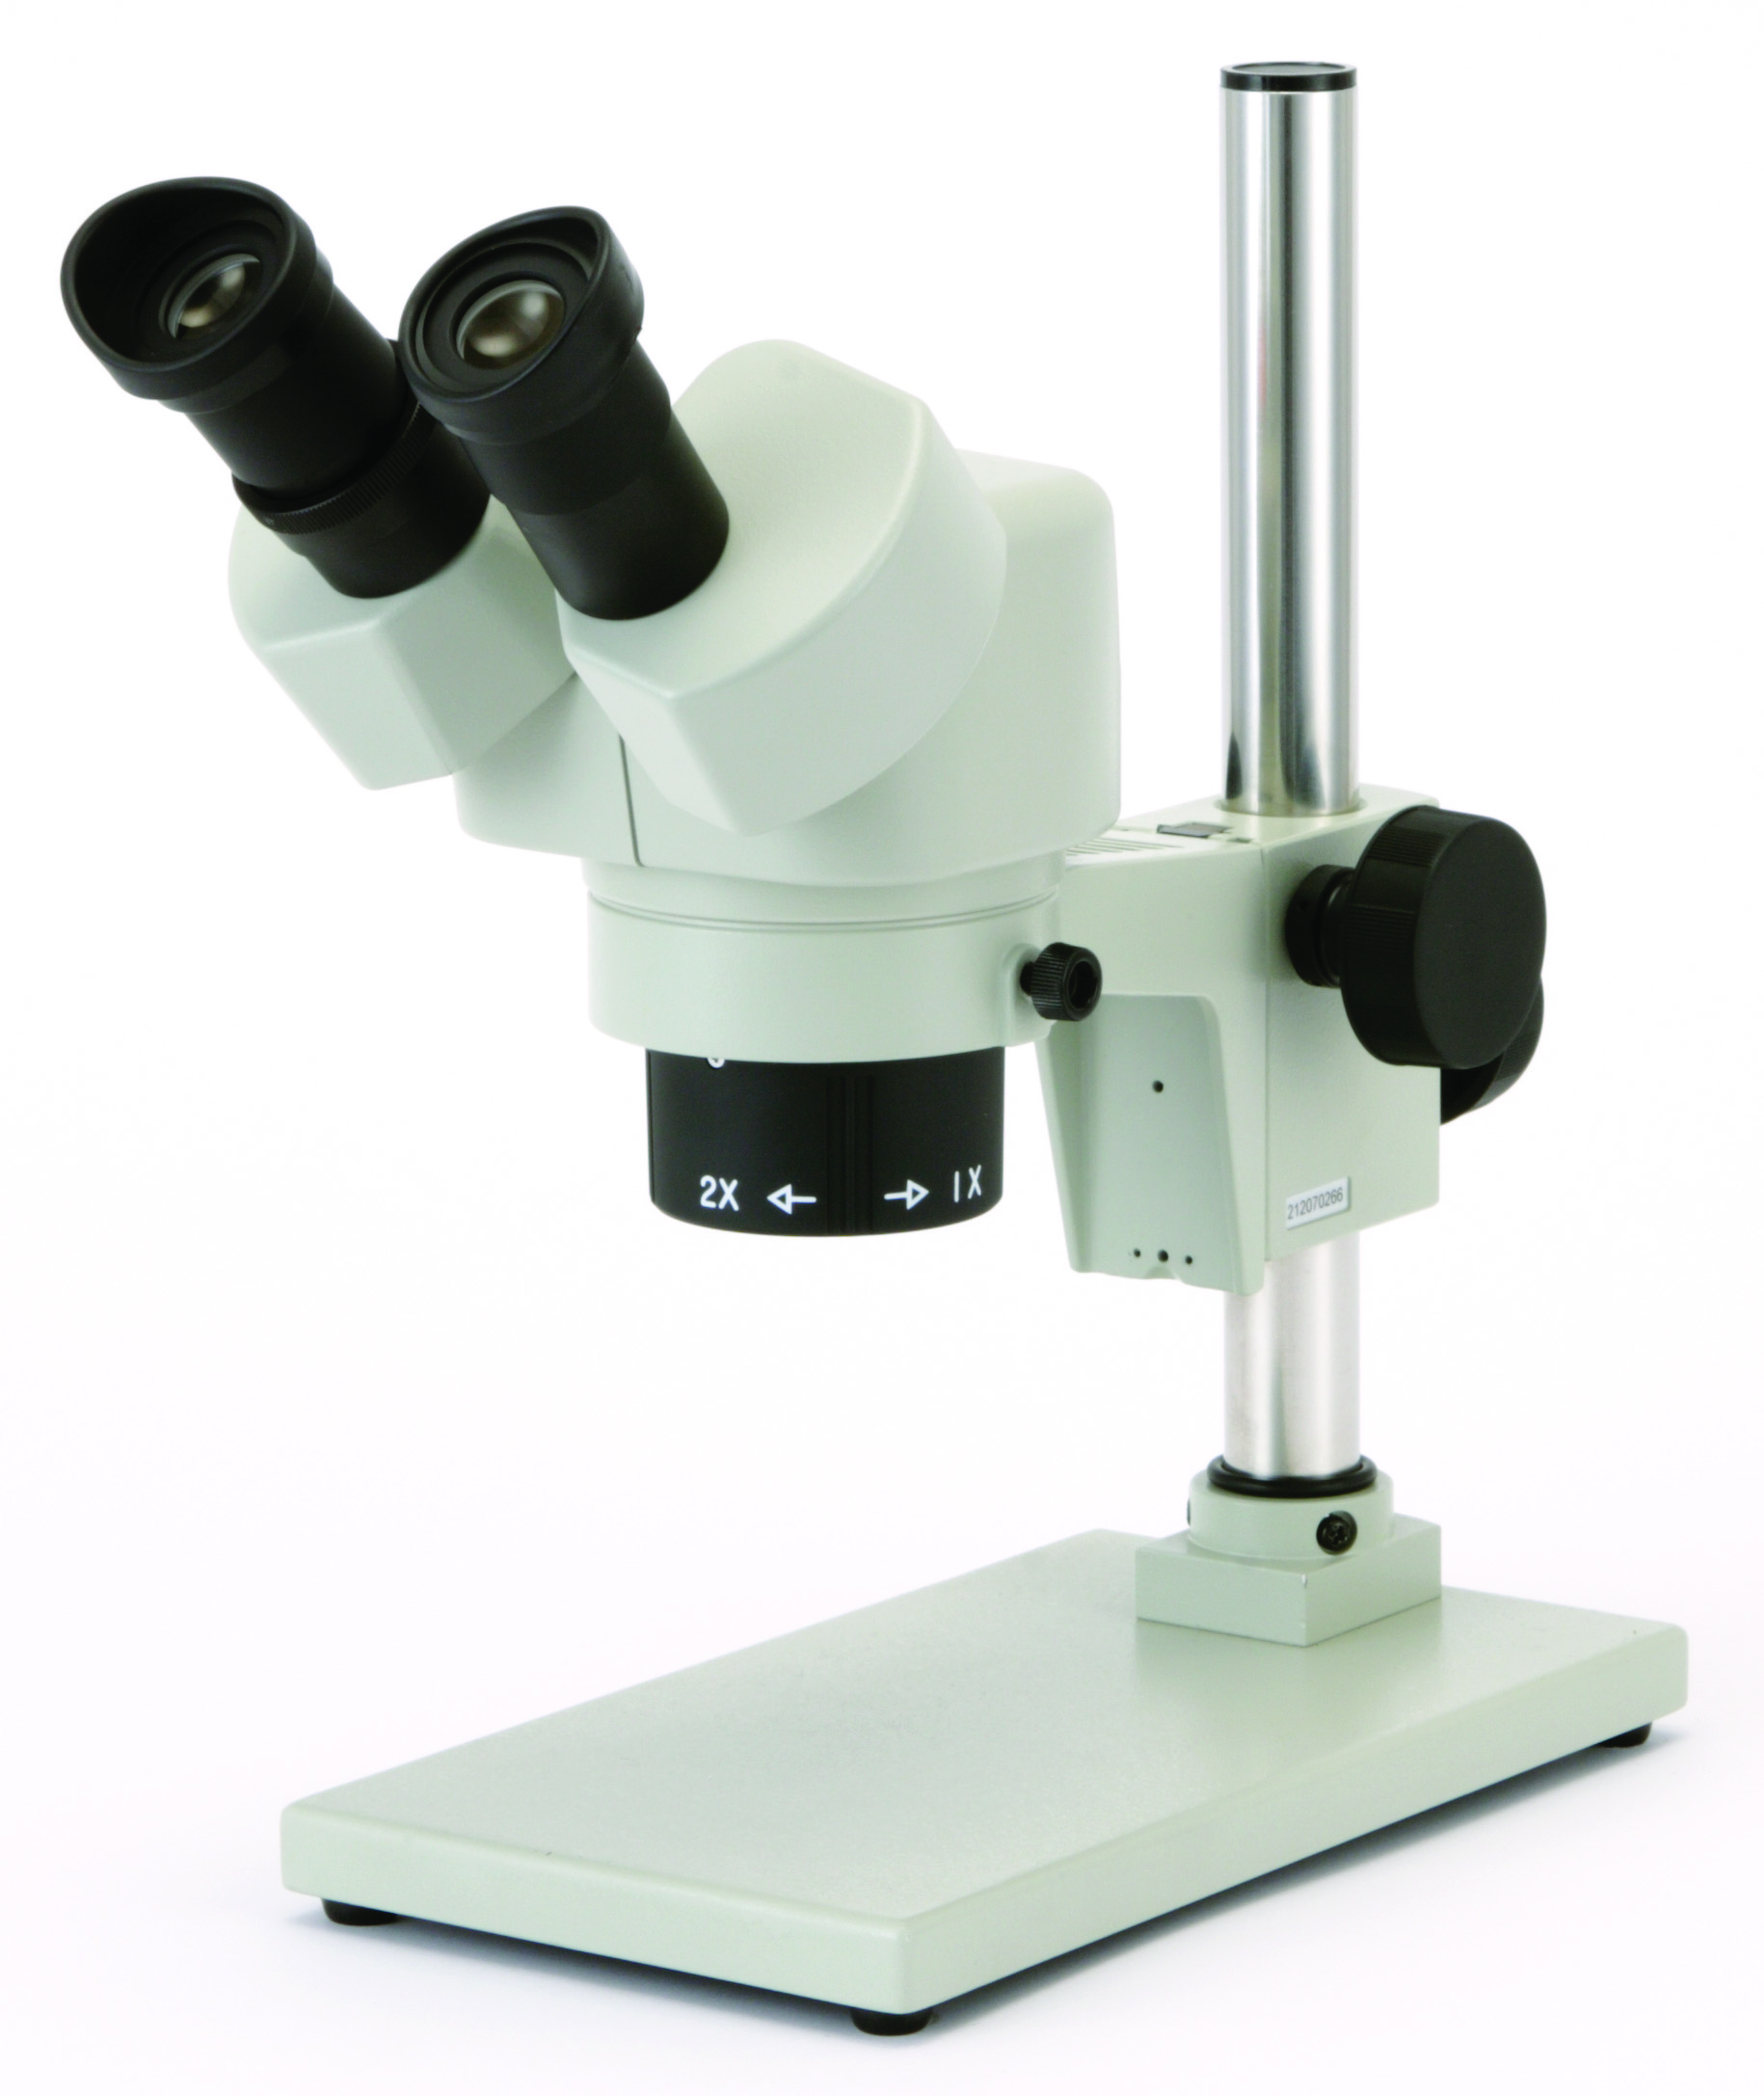 カートン光学 変倍システム実体顕微鏡<双眼式>倍率10倍・30倍